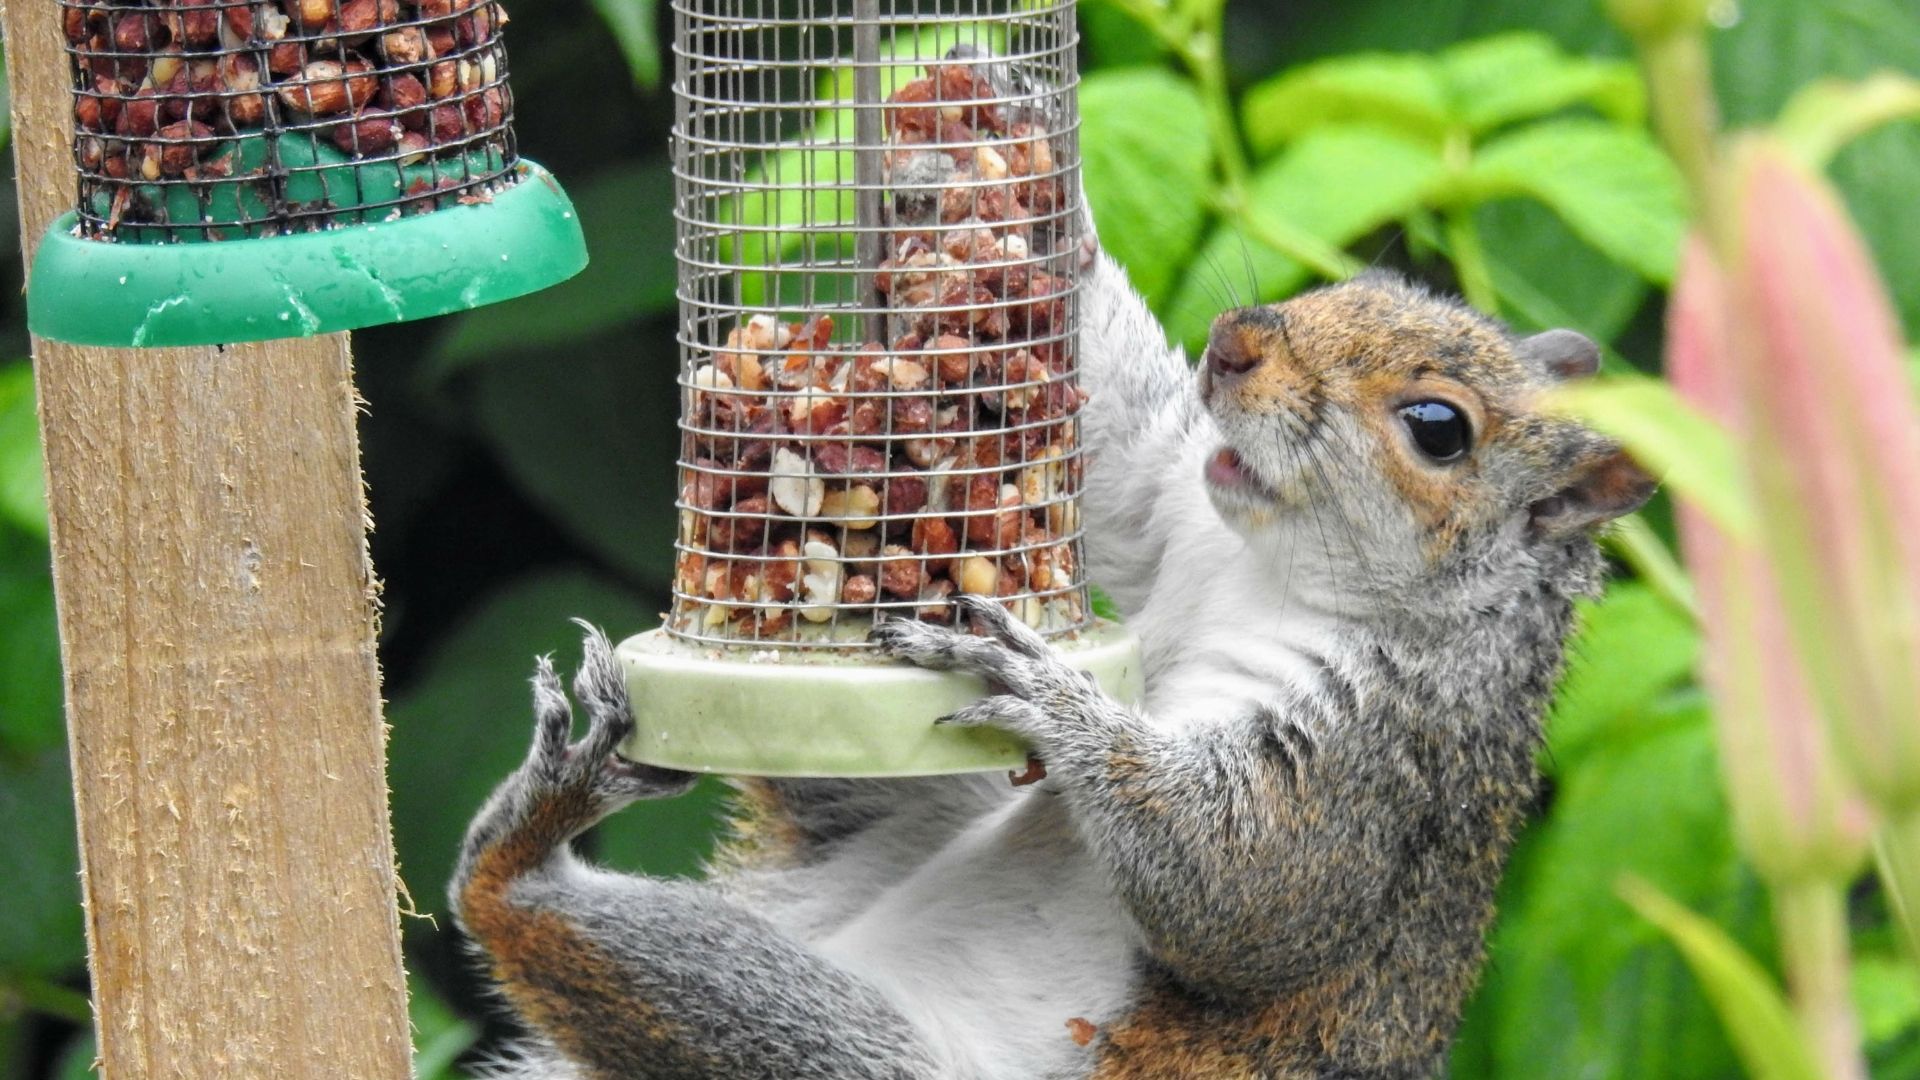 Squirrel hanging from bird feeder.